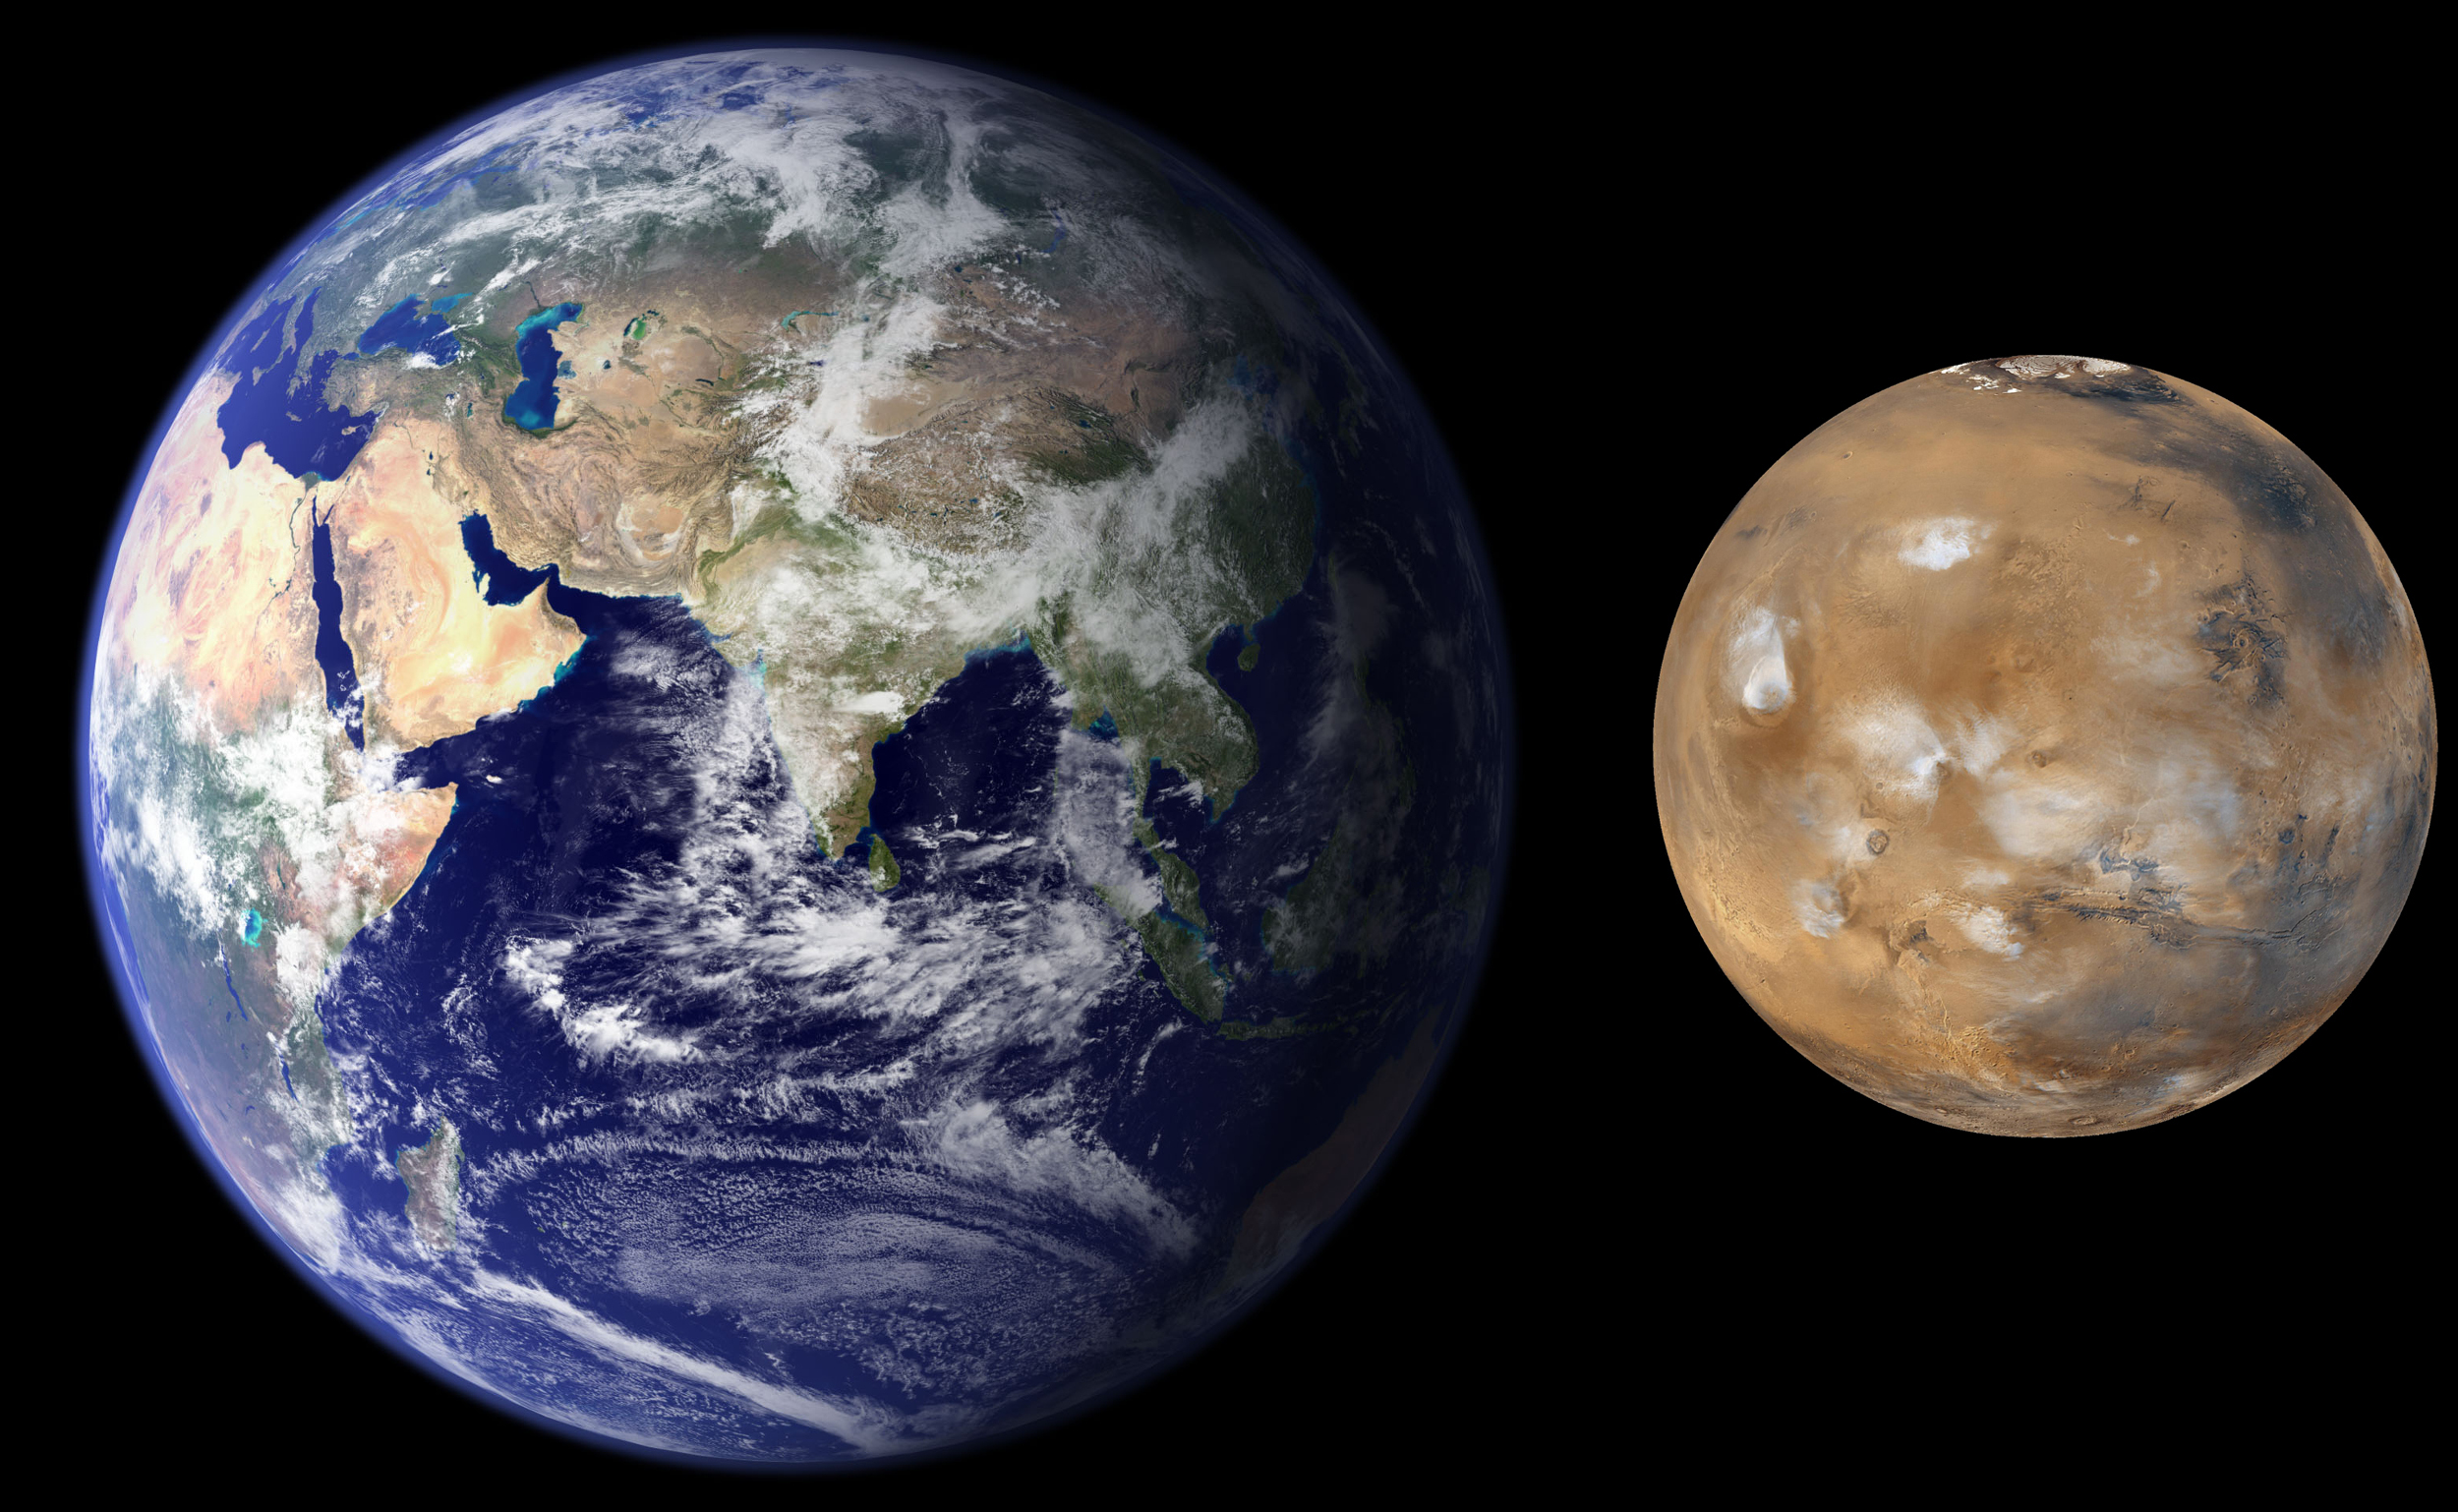 Erde und Mars im Vergleich